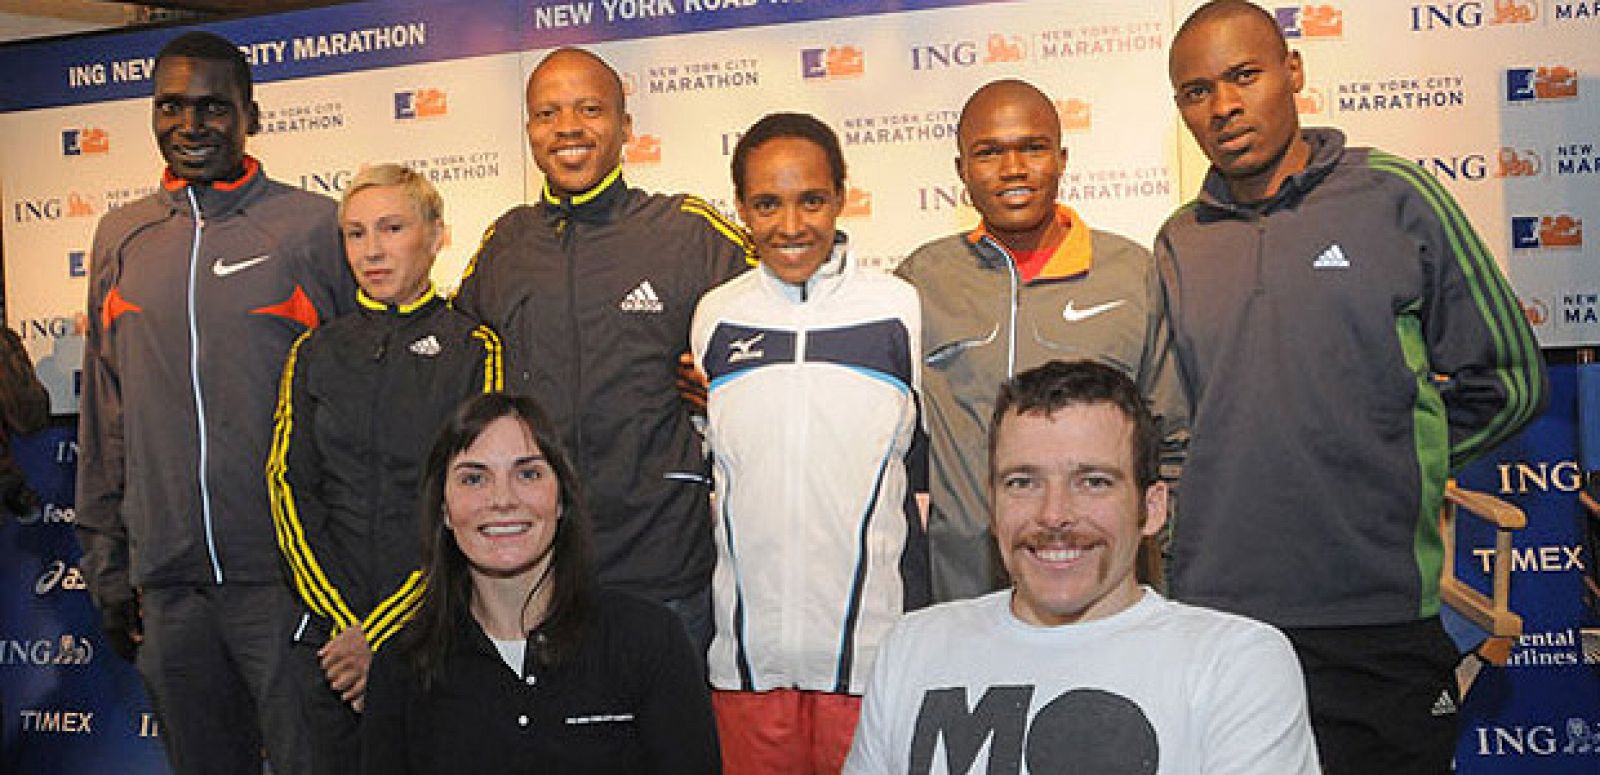 Algunos de los favoritos para ganar la edición 2009: Hendrick Ramaala (Sudáfrica); Derartu Tulu (Etiopía); James Kwambai (Kenia); Patrick Makau (Kenia). Delante, Christine Dawes Australia) y Kurt Fearnley (Australia).